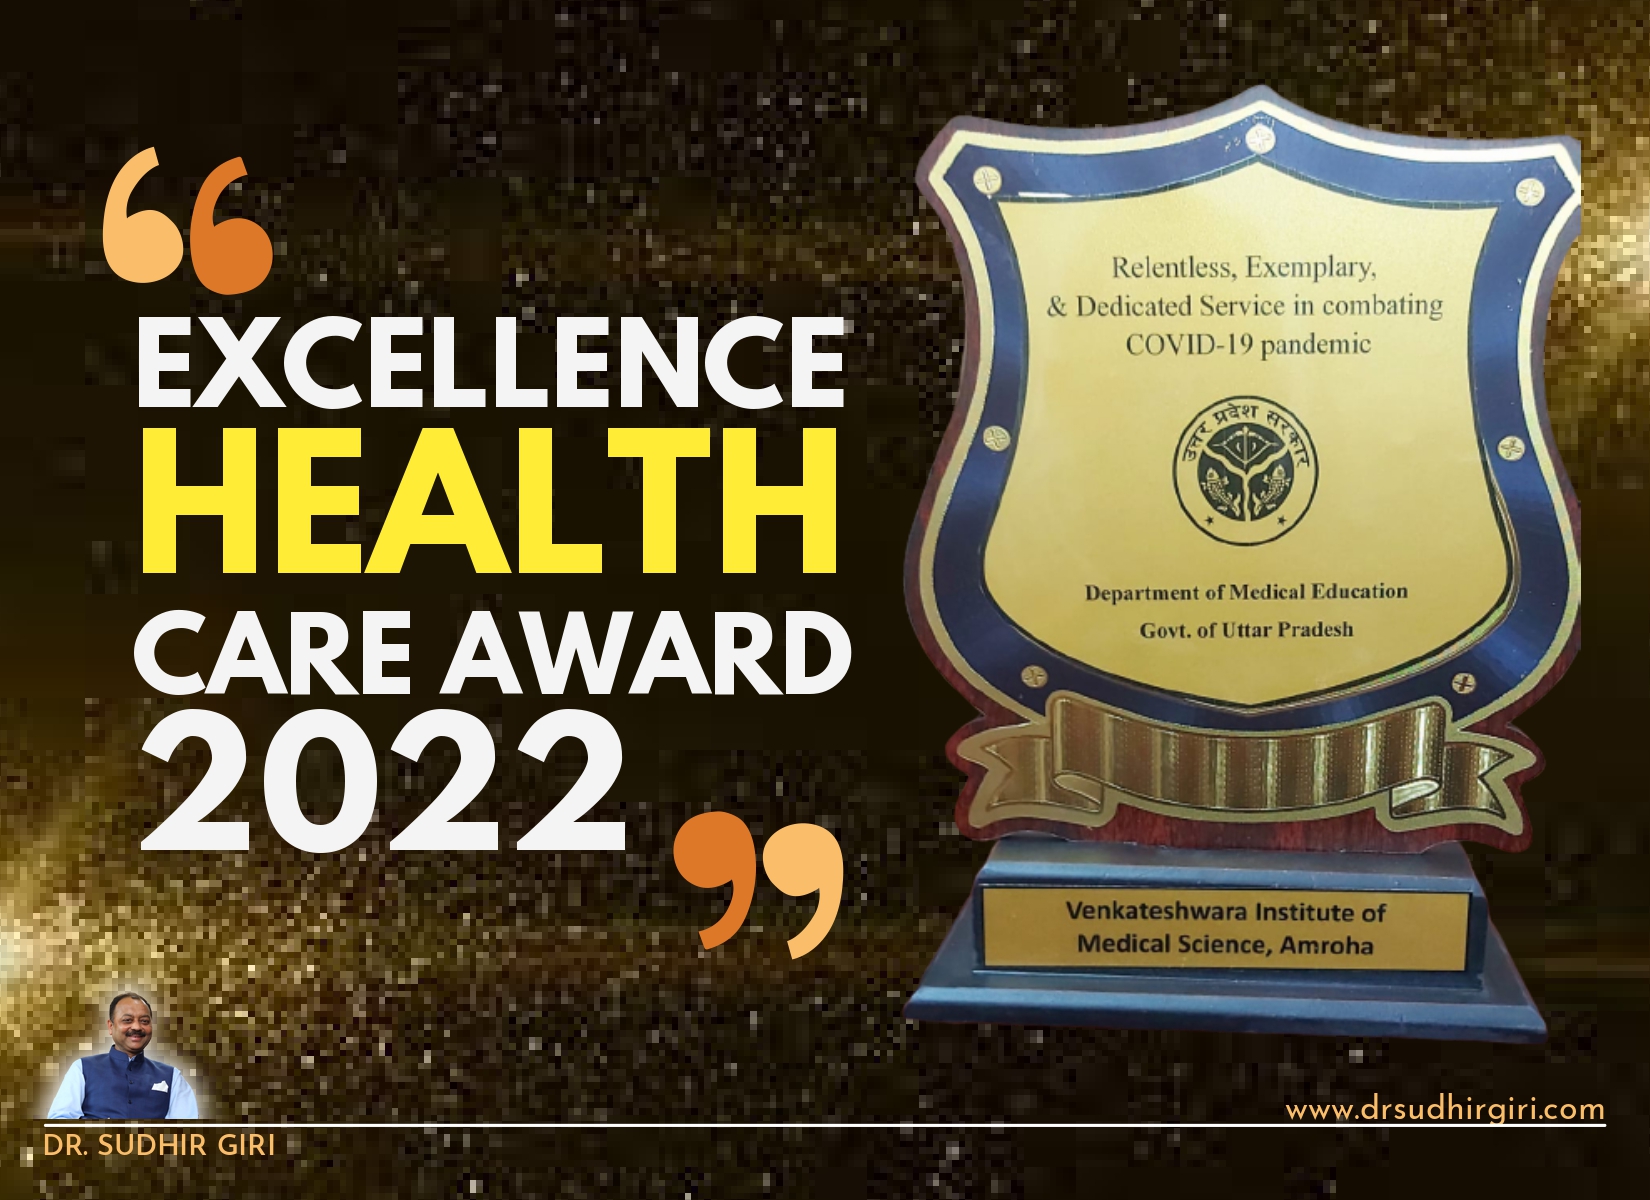 Sudhir Giri - Excellence Health Care Award 2022